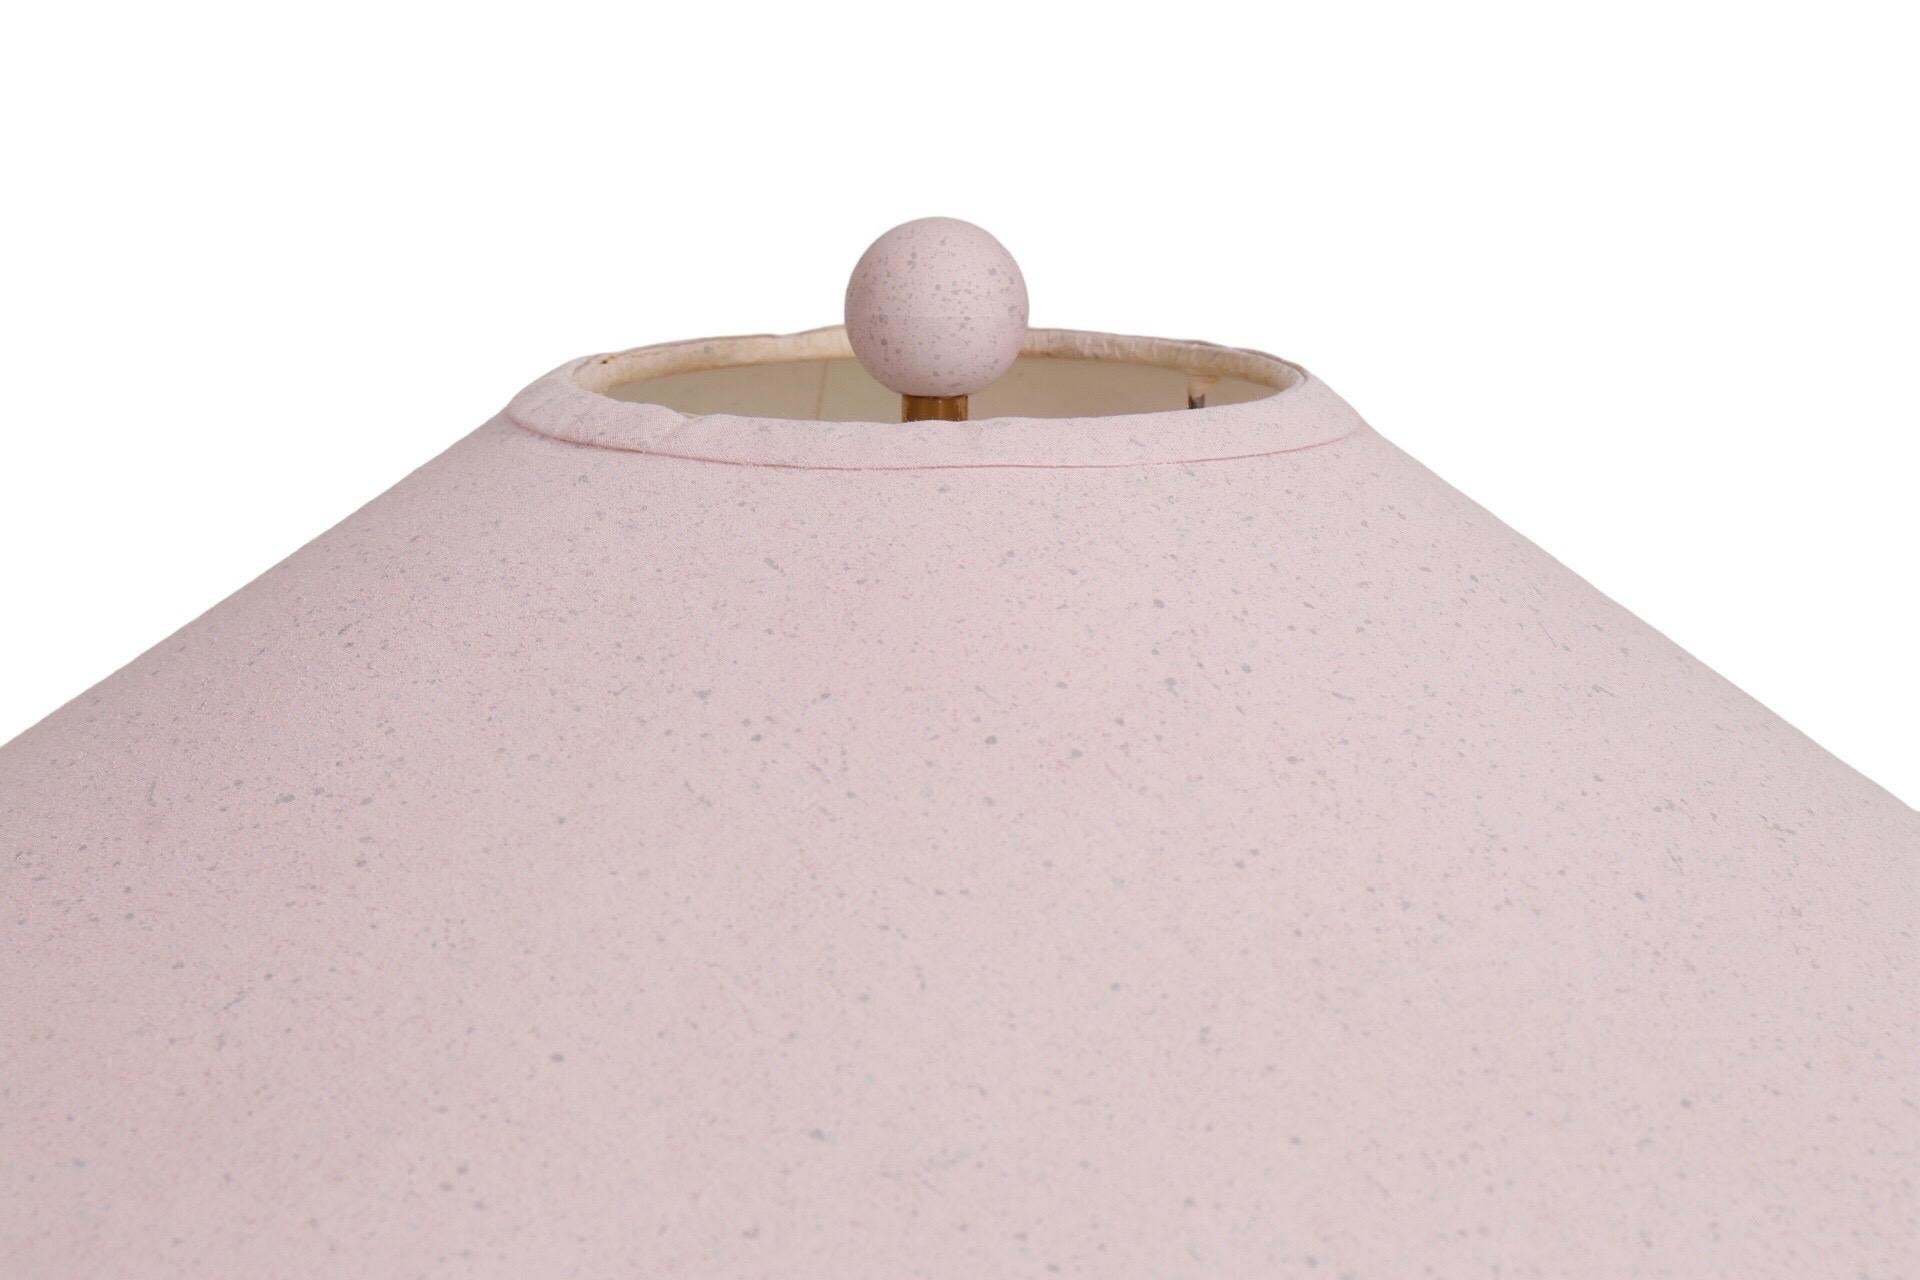 Une lampe de table en fer forgé personnalisée en rose avec un abat-jour en forme de coolie. Cinq rubans de fer roses enroulés entourent la colonne centrale, attachés au sommet et à la base ronde biseautée par des nœuds décoratifs à volutes. Une